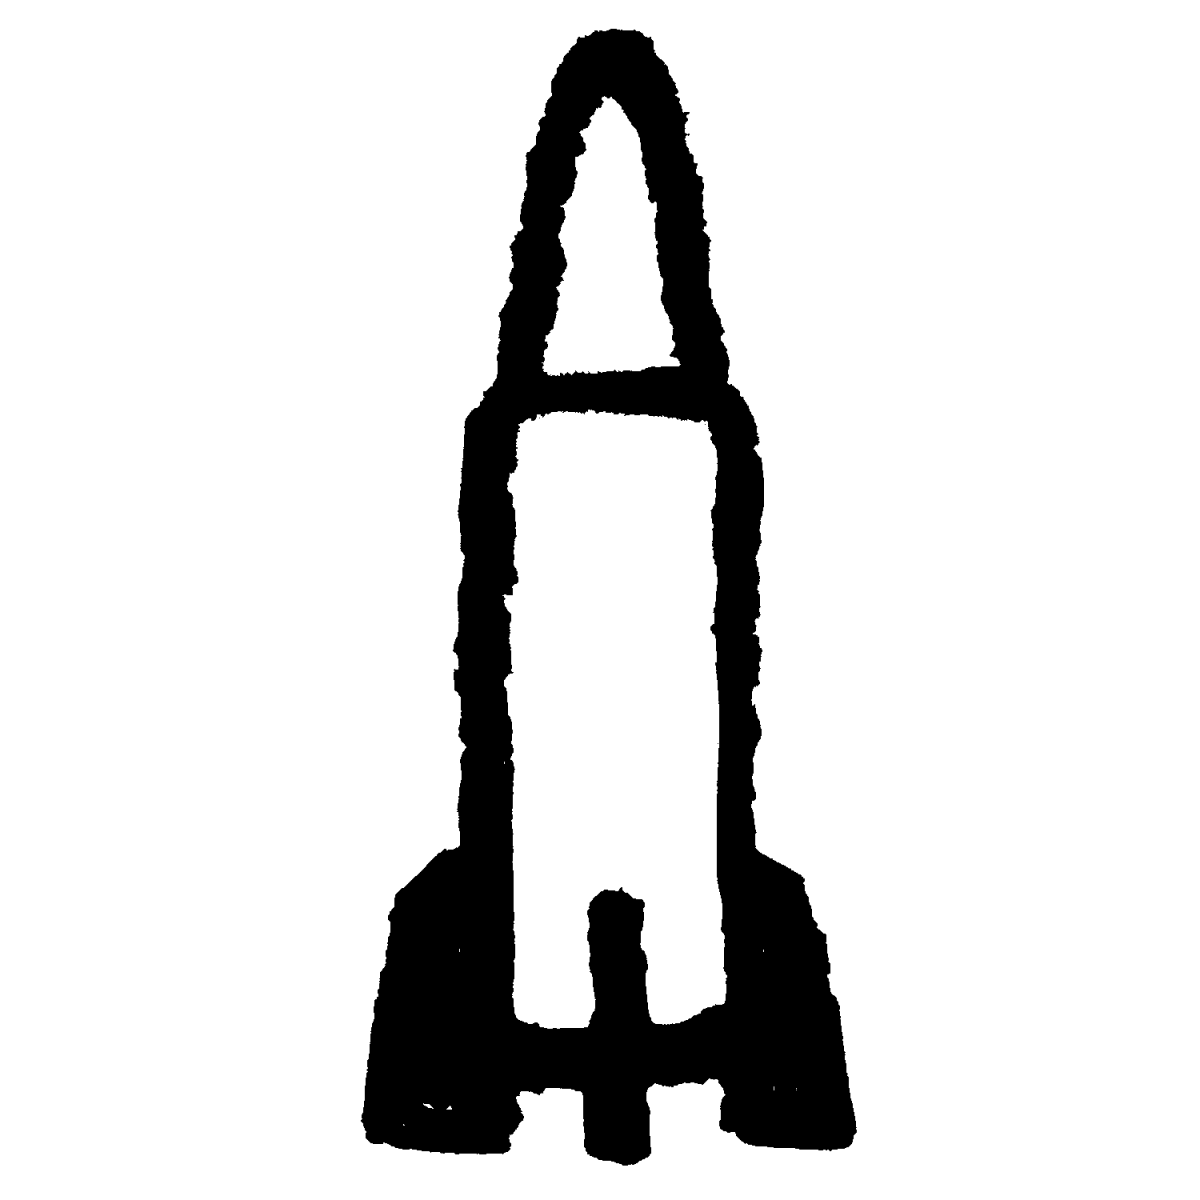 ロケット／ミサイル（煙つきあり）のイラスト / rocket/missile Illustration